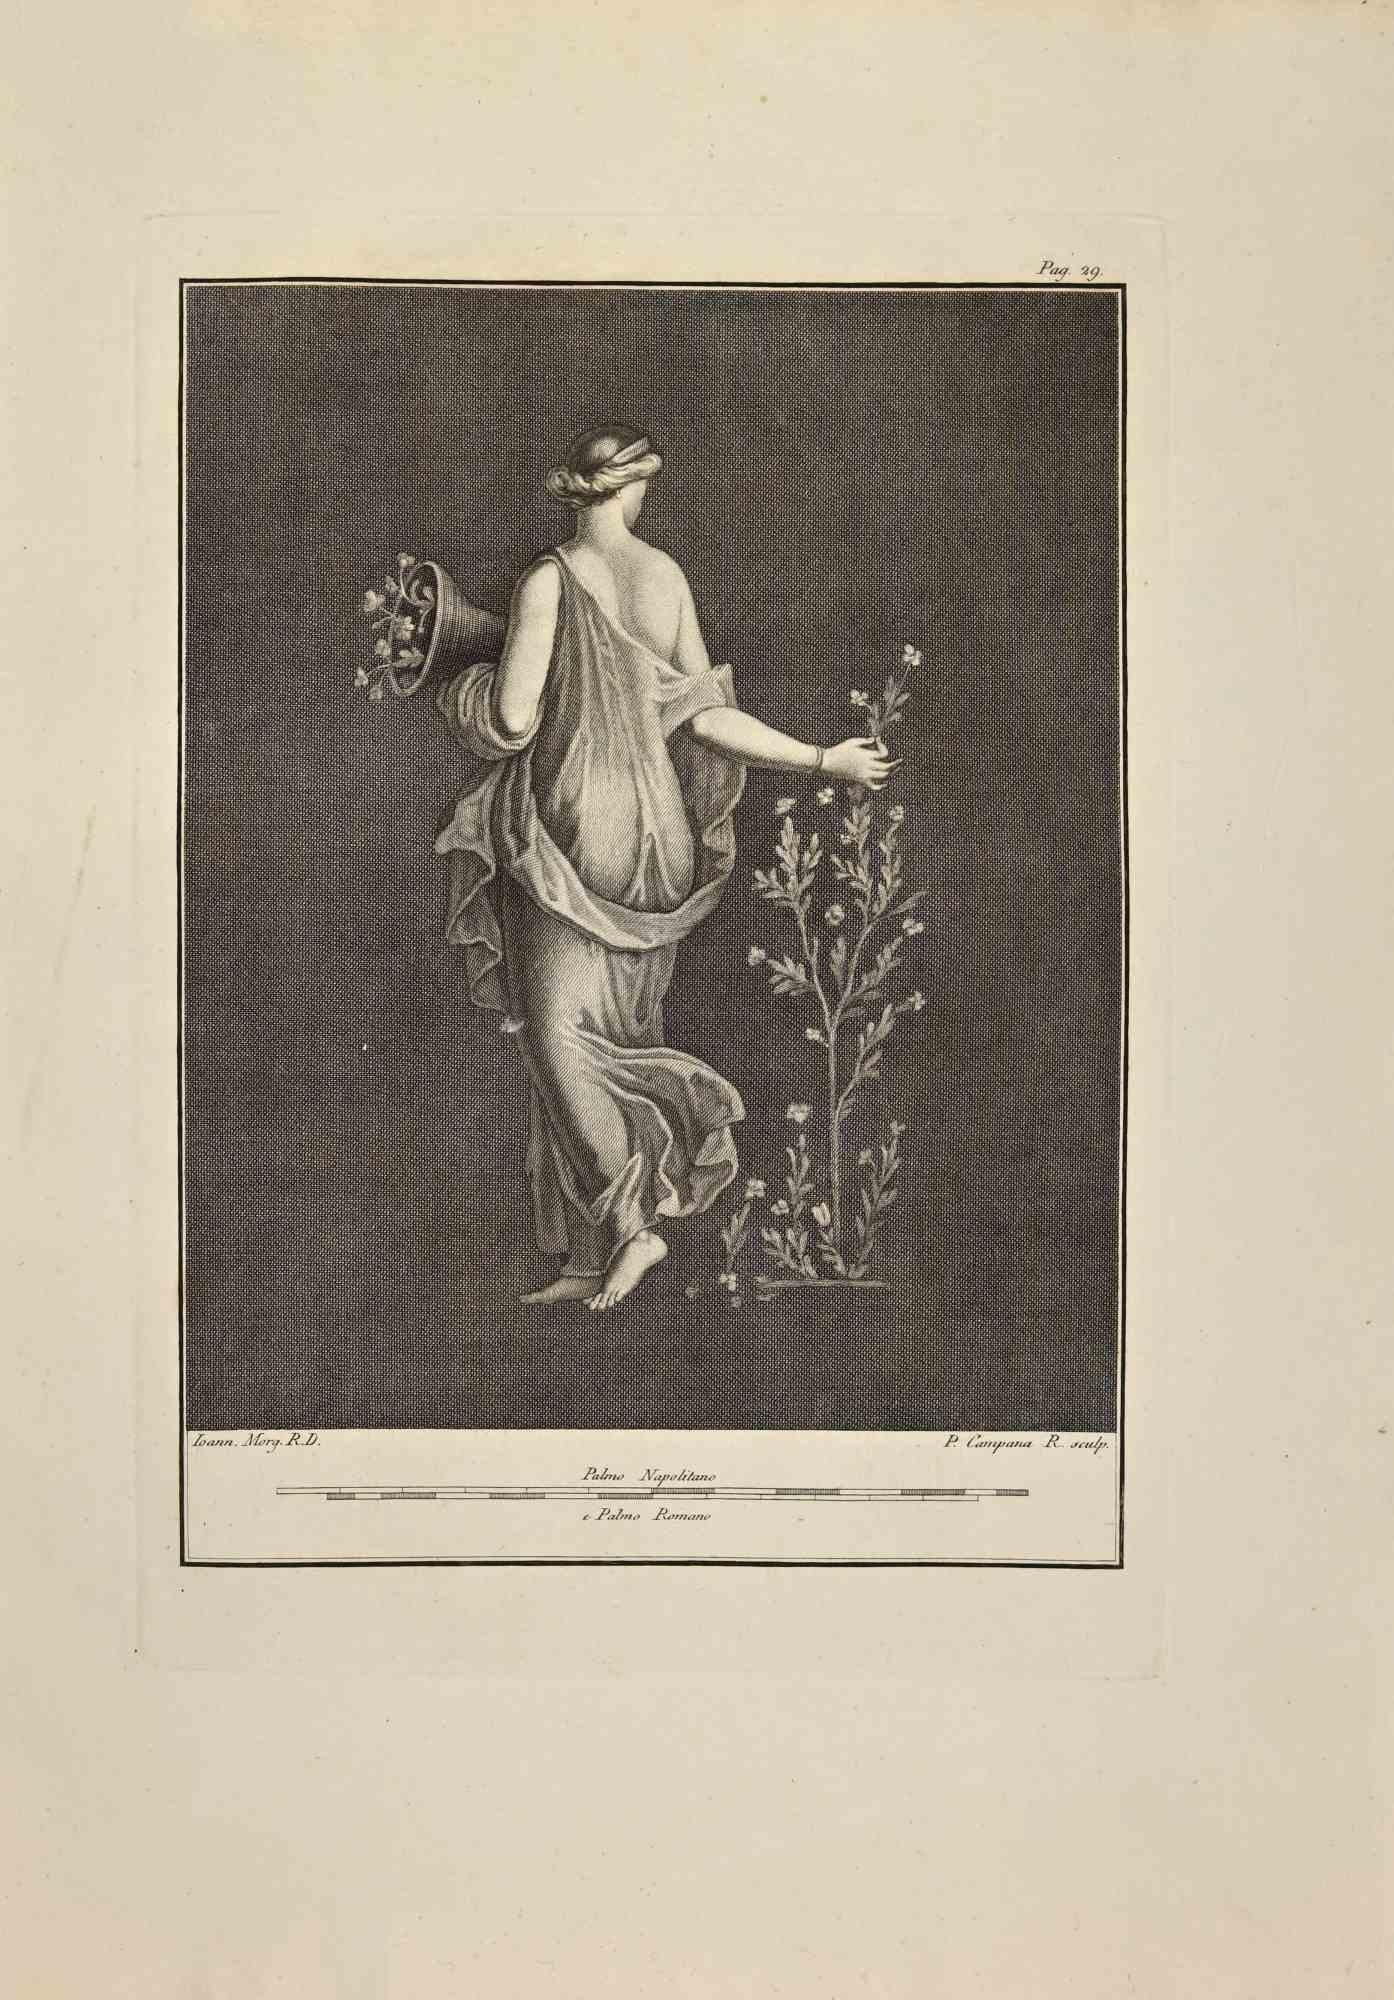 Déesse Flora, Allégorie du Printemps des "Antiquités d'Herculanum" est une gravure sur papier réalisée par Pietro Campana au 18ème siècle.

Signé sur la plaque.

Bon état avec quelques pliures.

La gravure appartient à la suite d'estampes